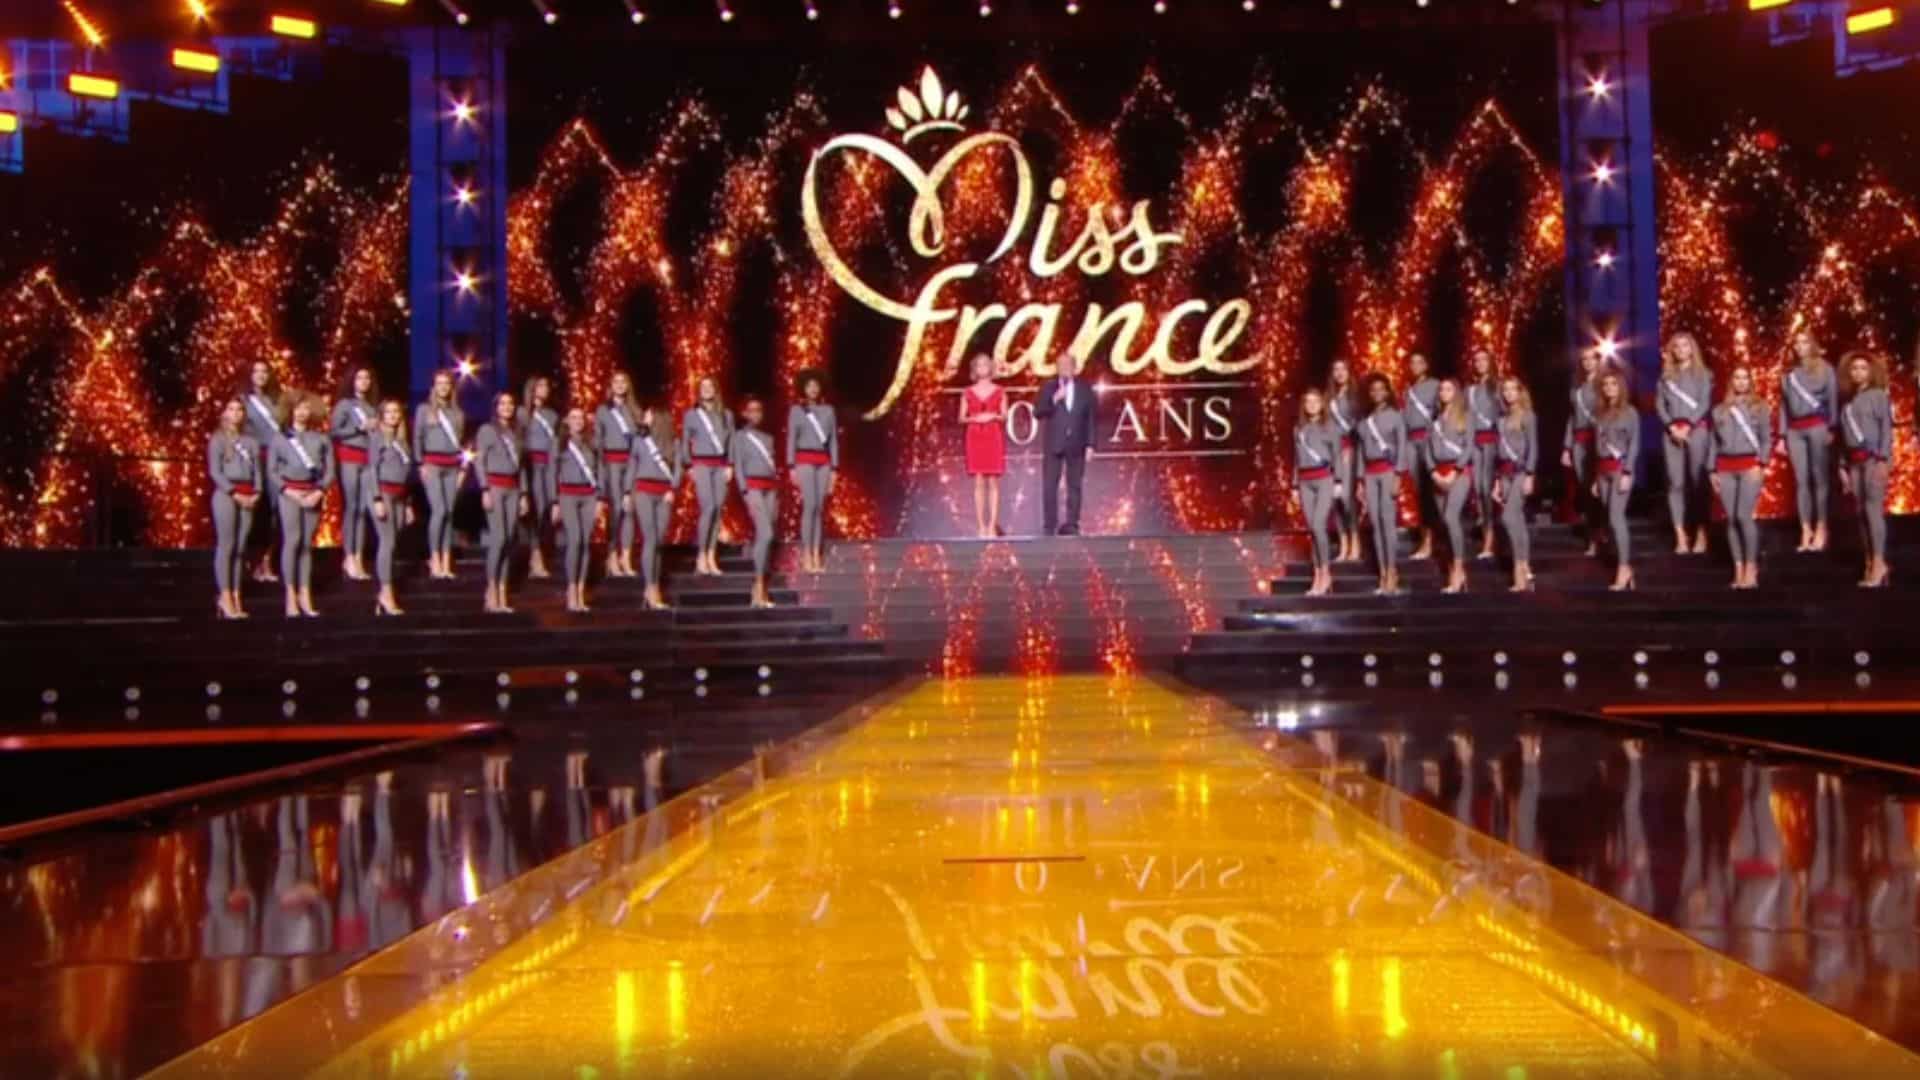 Miss France 2025 : un comité se retire de la compétition